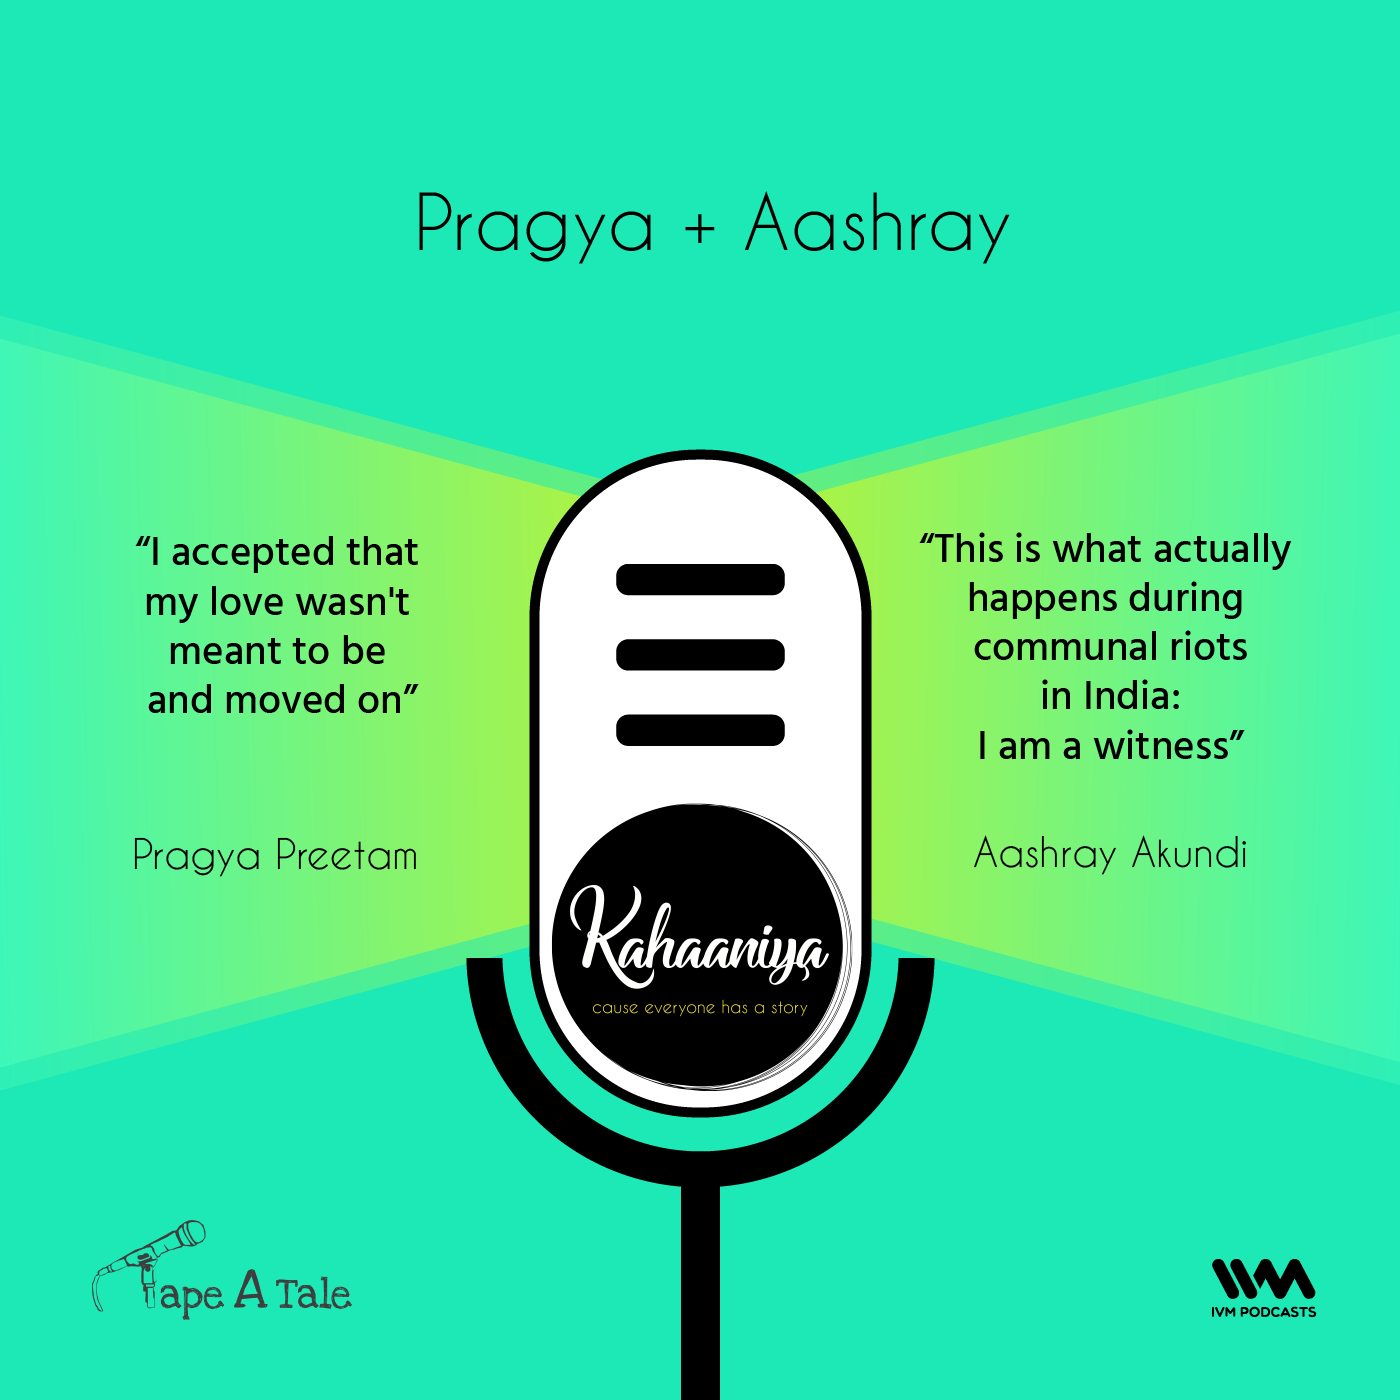 Ep. 14: Pragya + Aashray